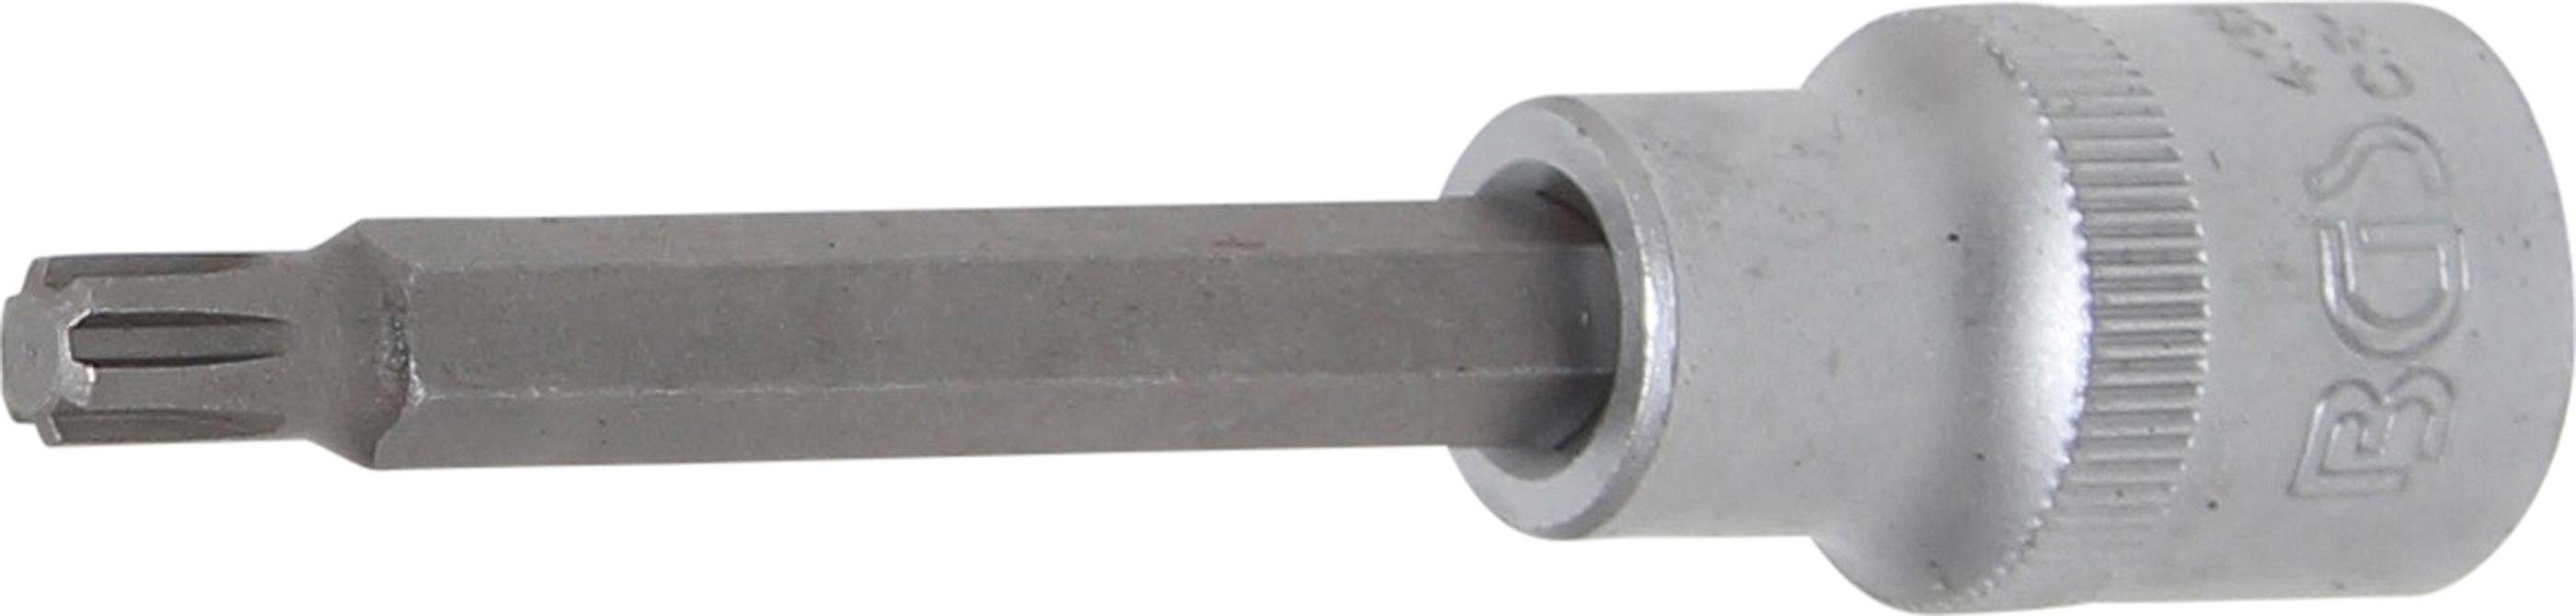 BGS technic Bit-Schraubendreher Bit-Einsatz, Länge 100 mm, Antrieb Innenvierkant 12,5 mm (1/2), Keil-Profil (für RIBE) M7